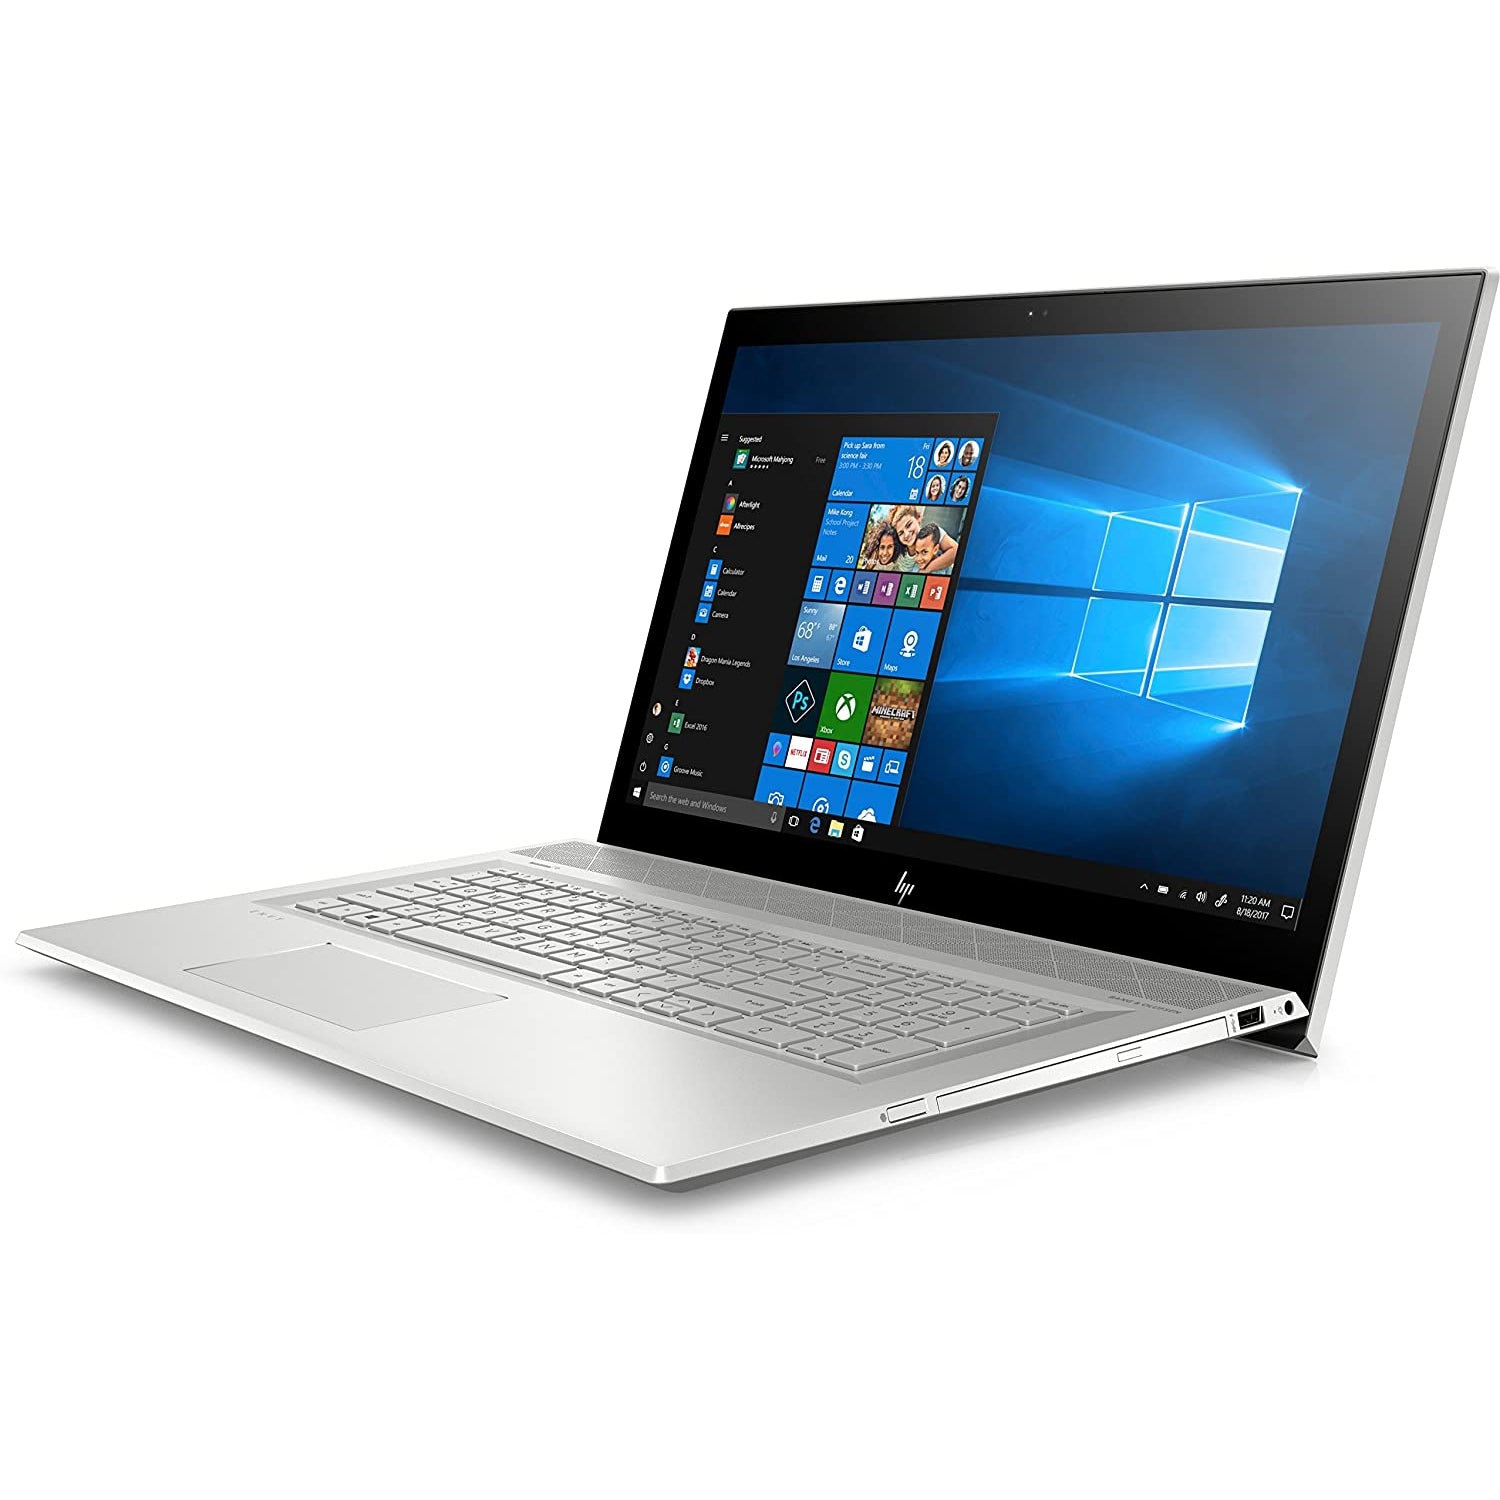 HP ENVY 17-bw0503na, 17.3" Laptop, Intel Core i7-8550U, 8GB RAM, 1TB HDD, NVIDIA GeForce MX150, Win 10, 4BA03EA#ABU - Silver